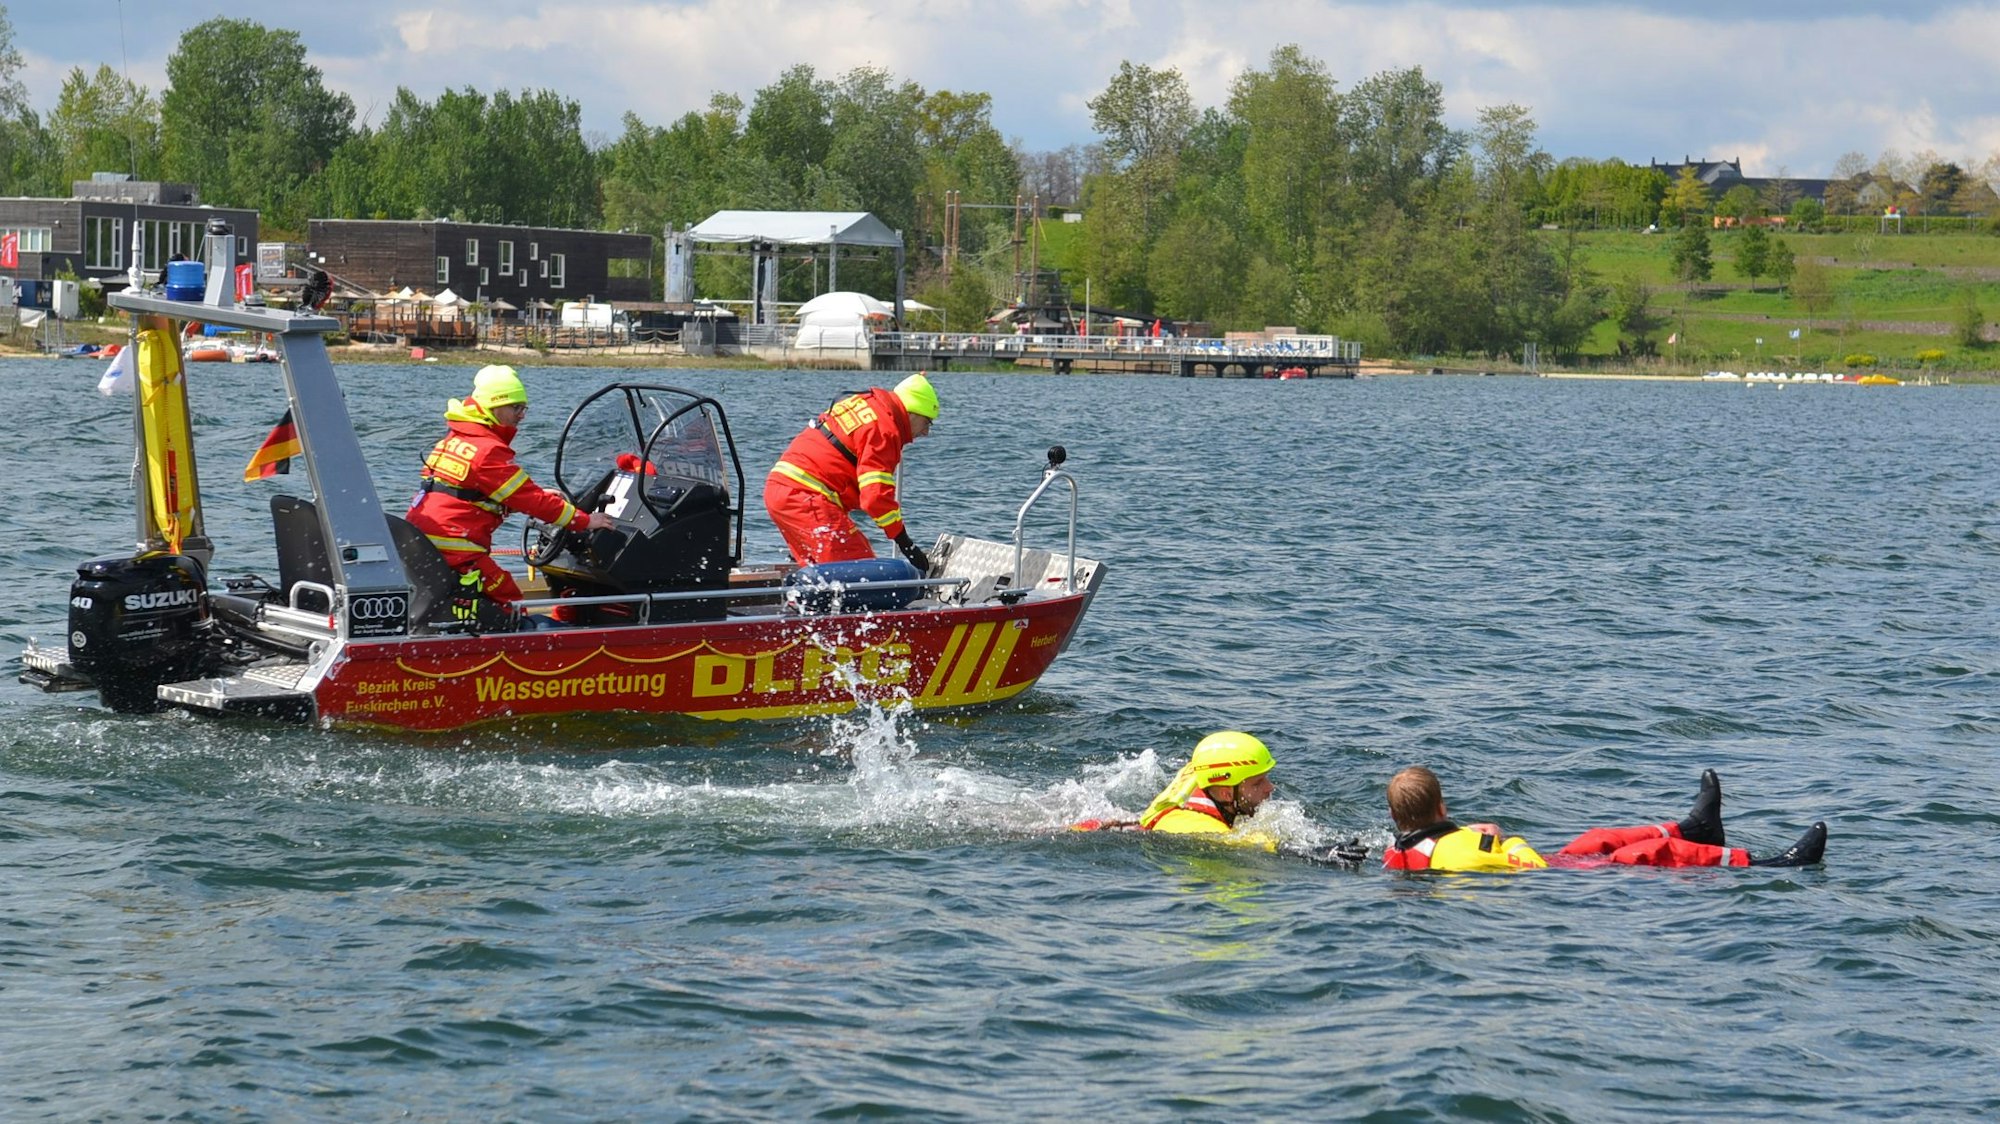 Zwei Einsatzkräfte bedienen das rote Motorboot. Ein dritter DLRG-Helfer ist in den Zülpicher See gesprungen und zieht einen Mann an Bord, der auf dem Rücken im Wasser treibt.